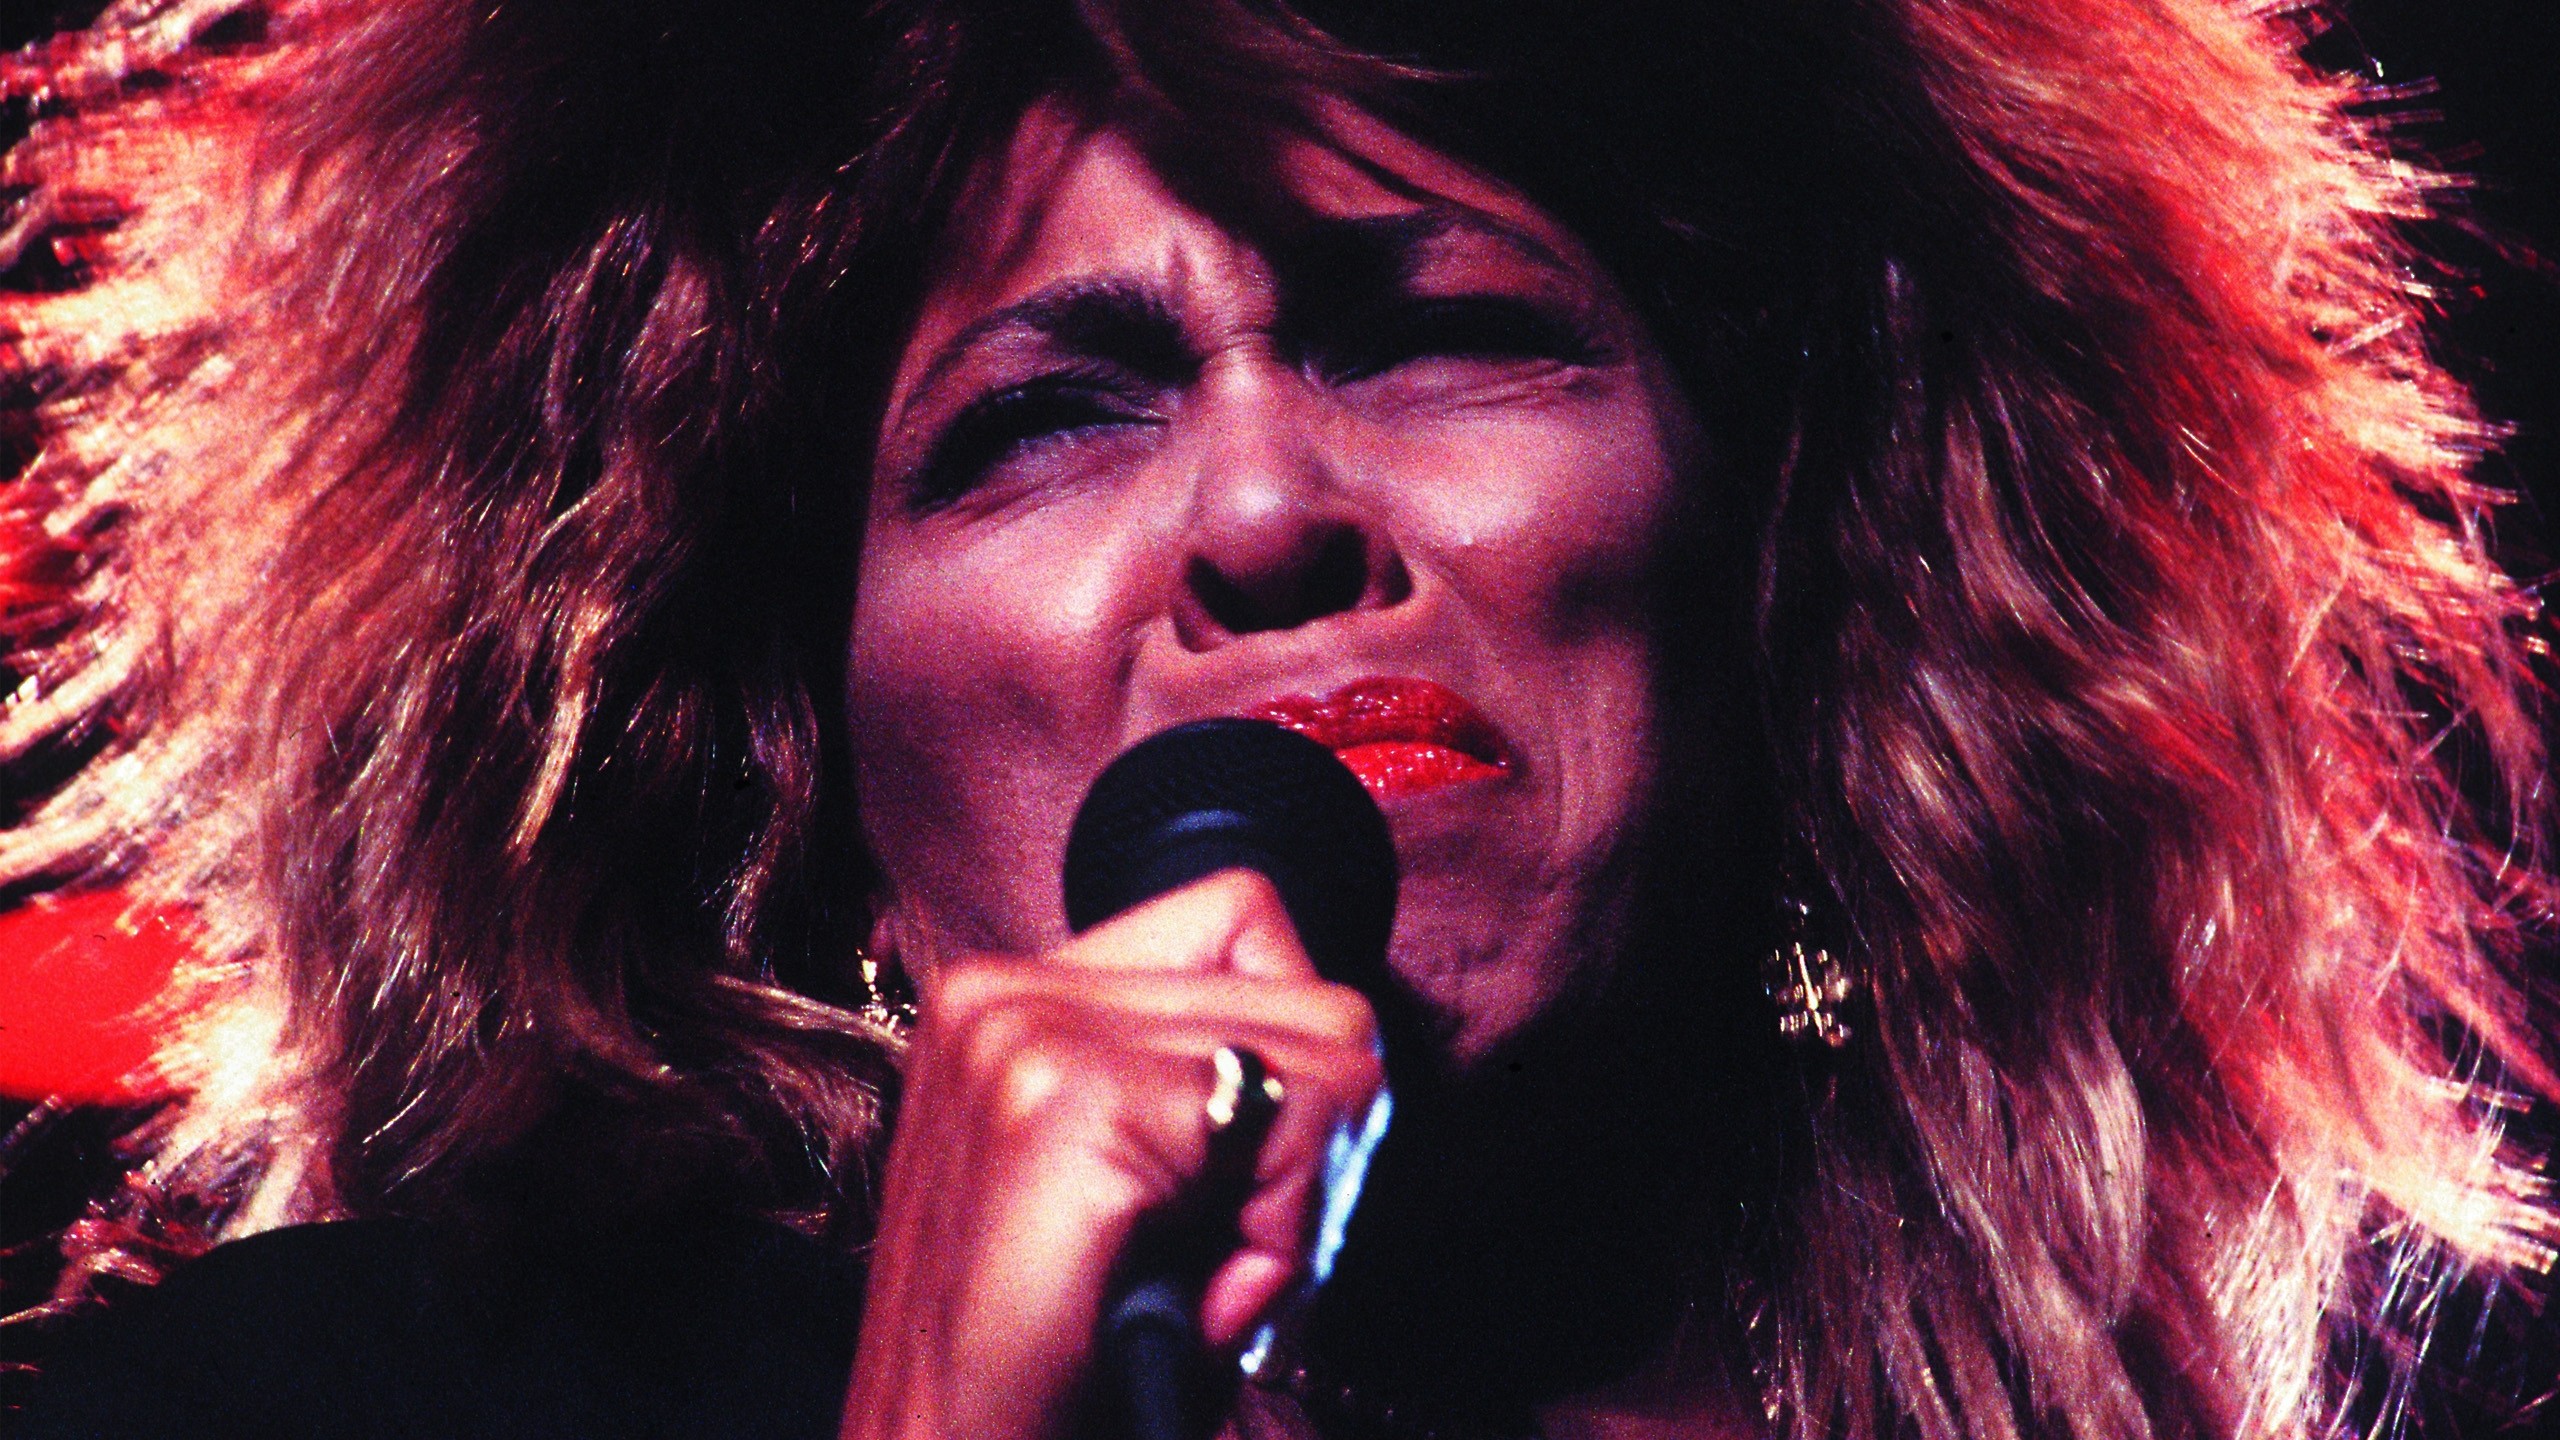 Tina Turner singing